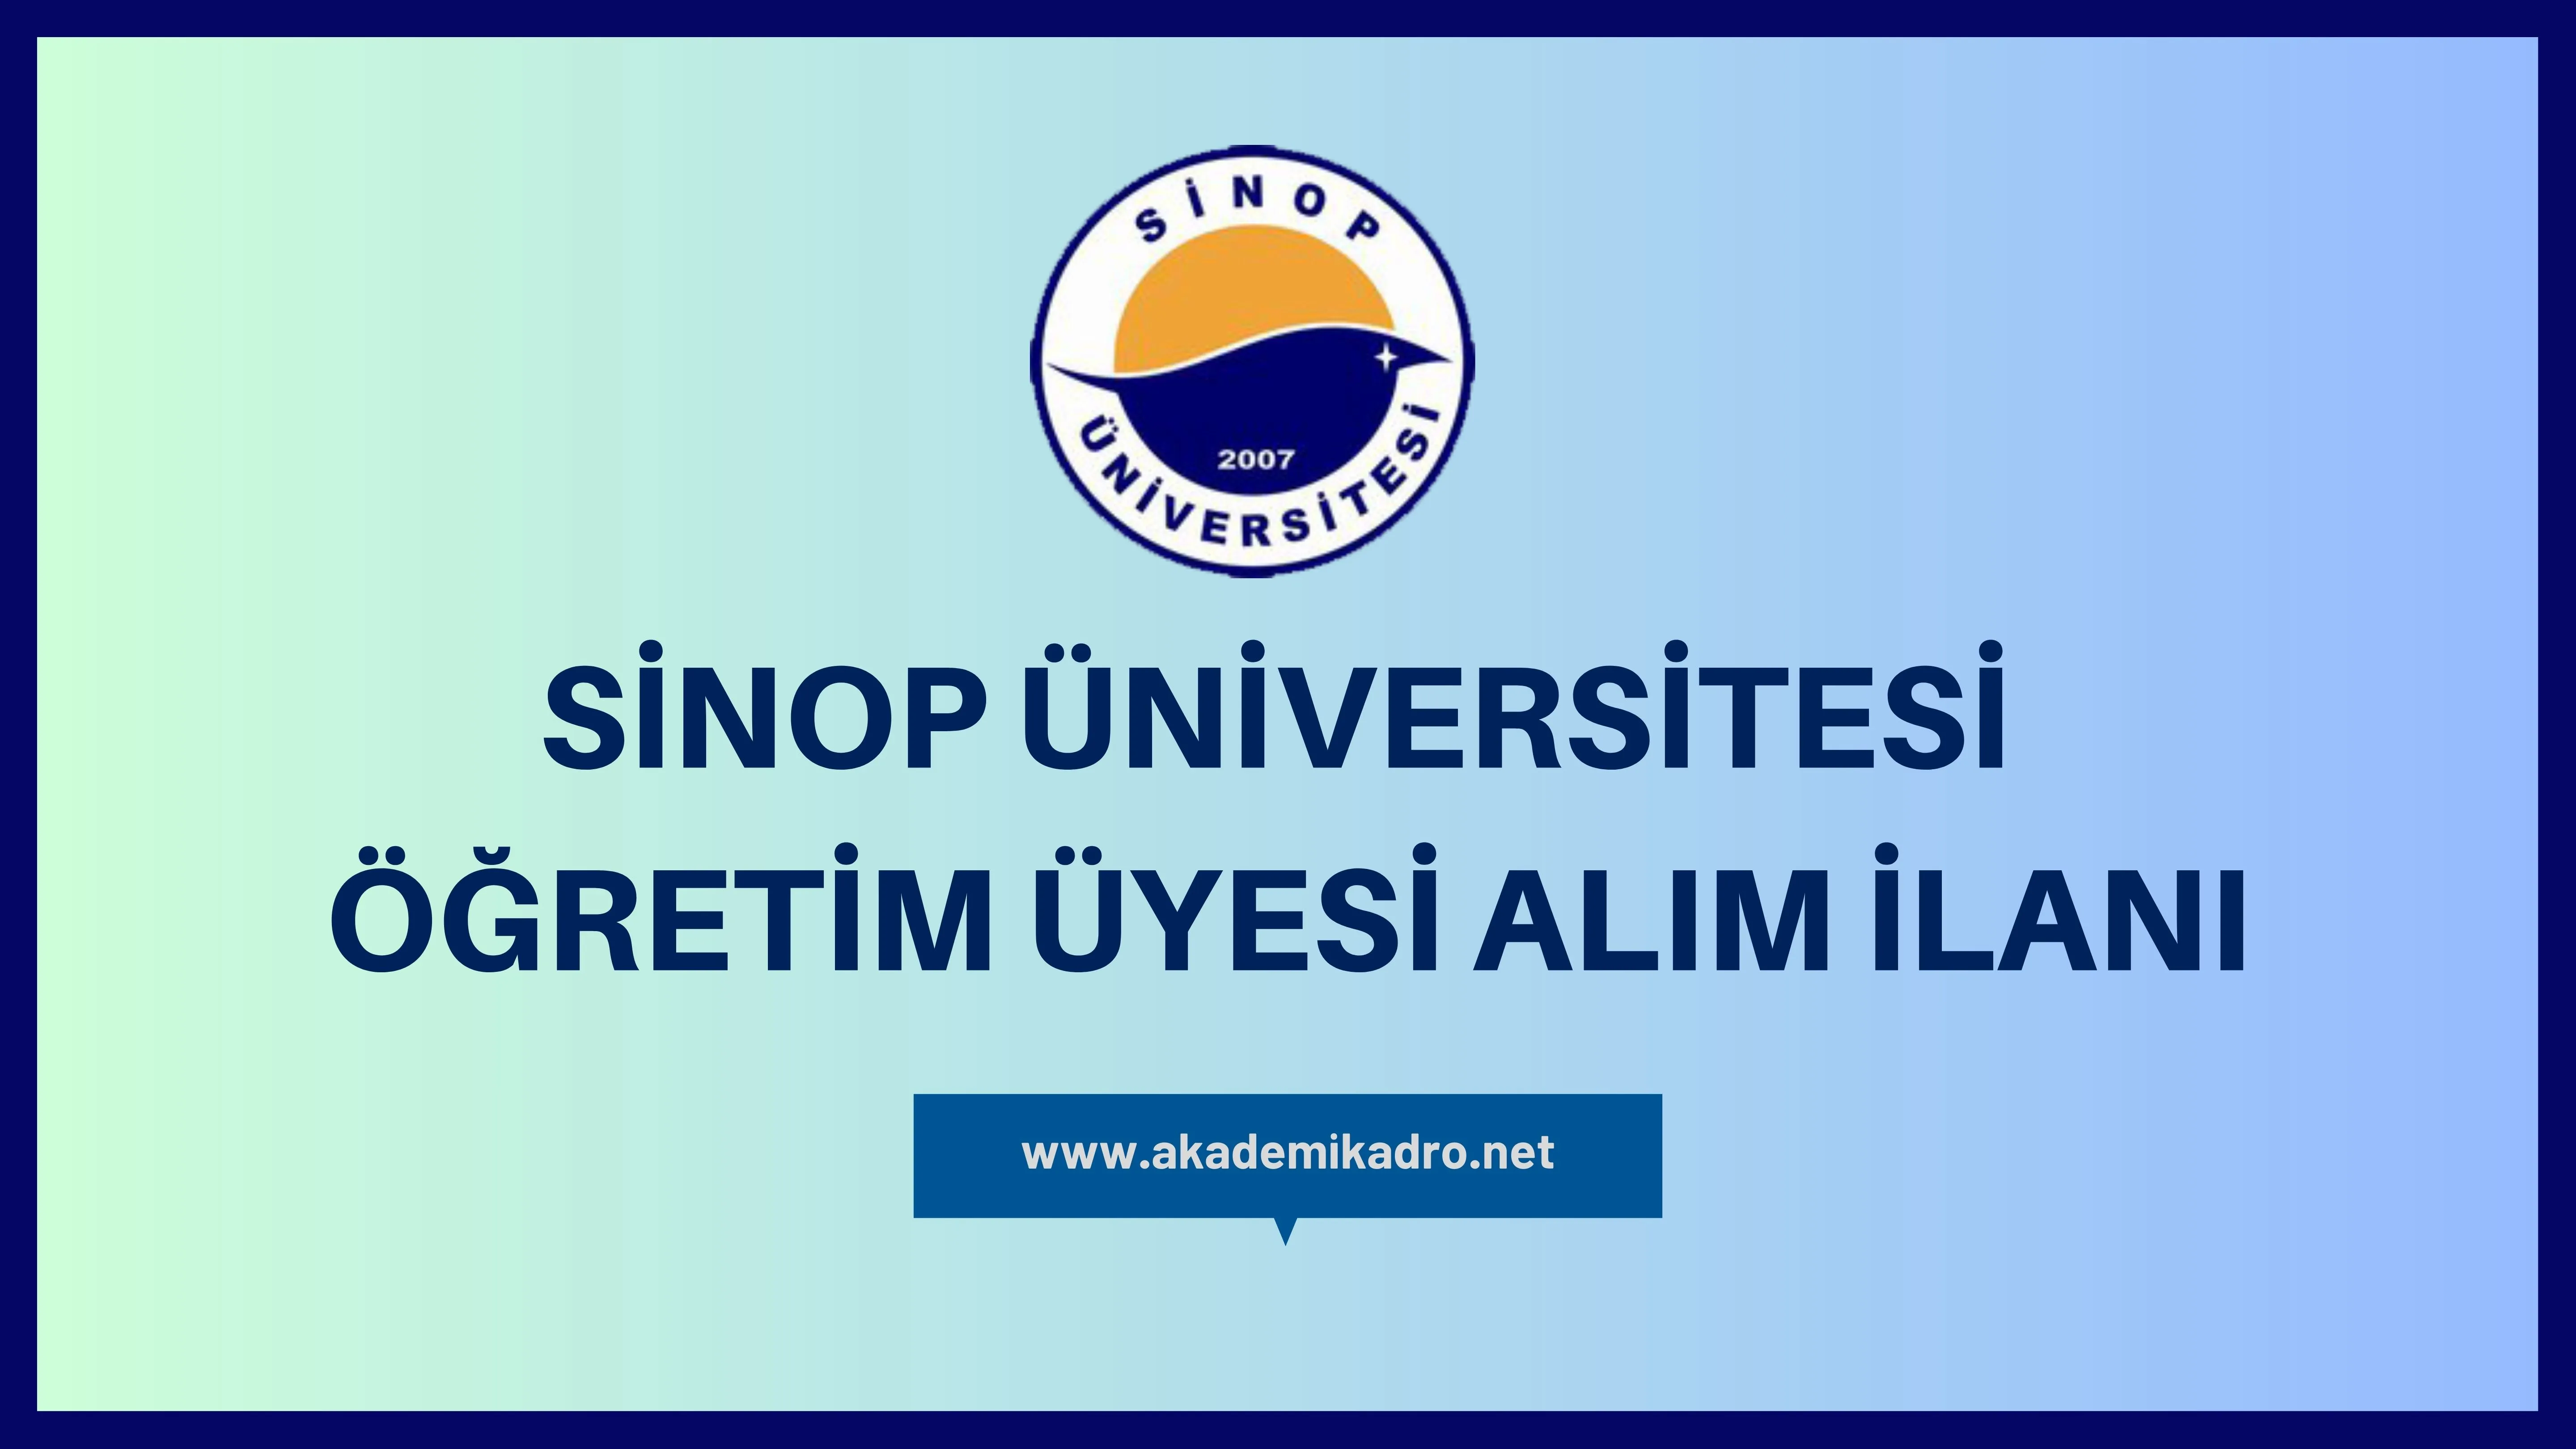 Sinop Üniversitesi birçok alandan 26 öğretim üyesi alacak.